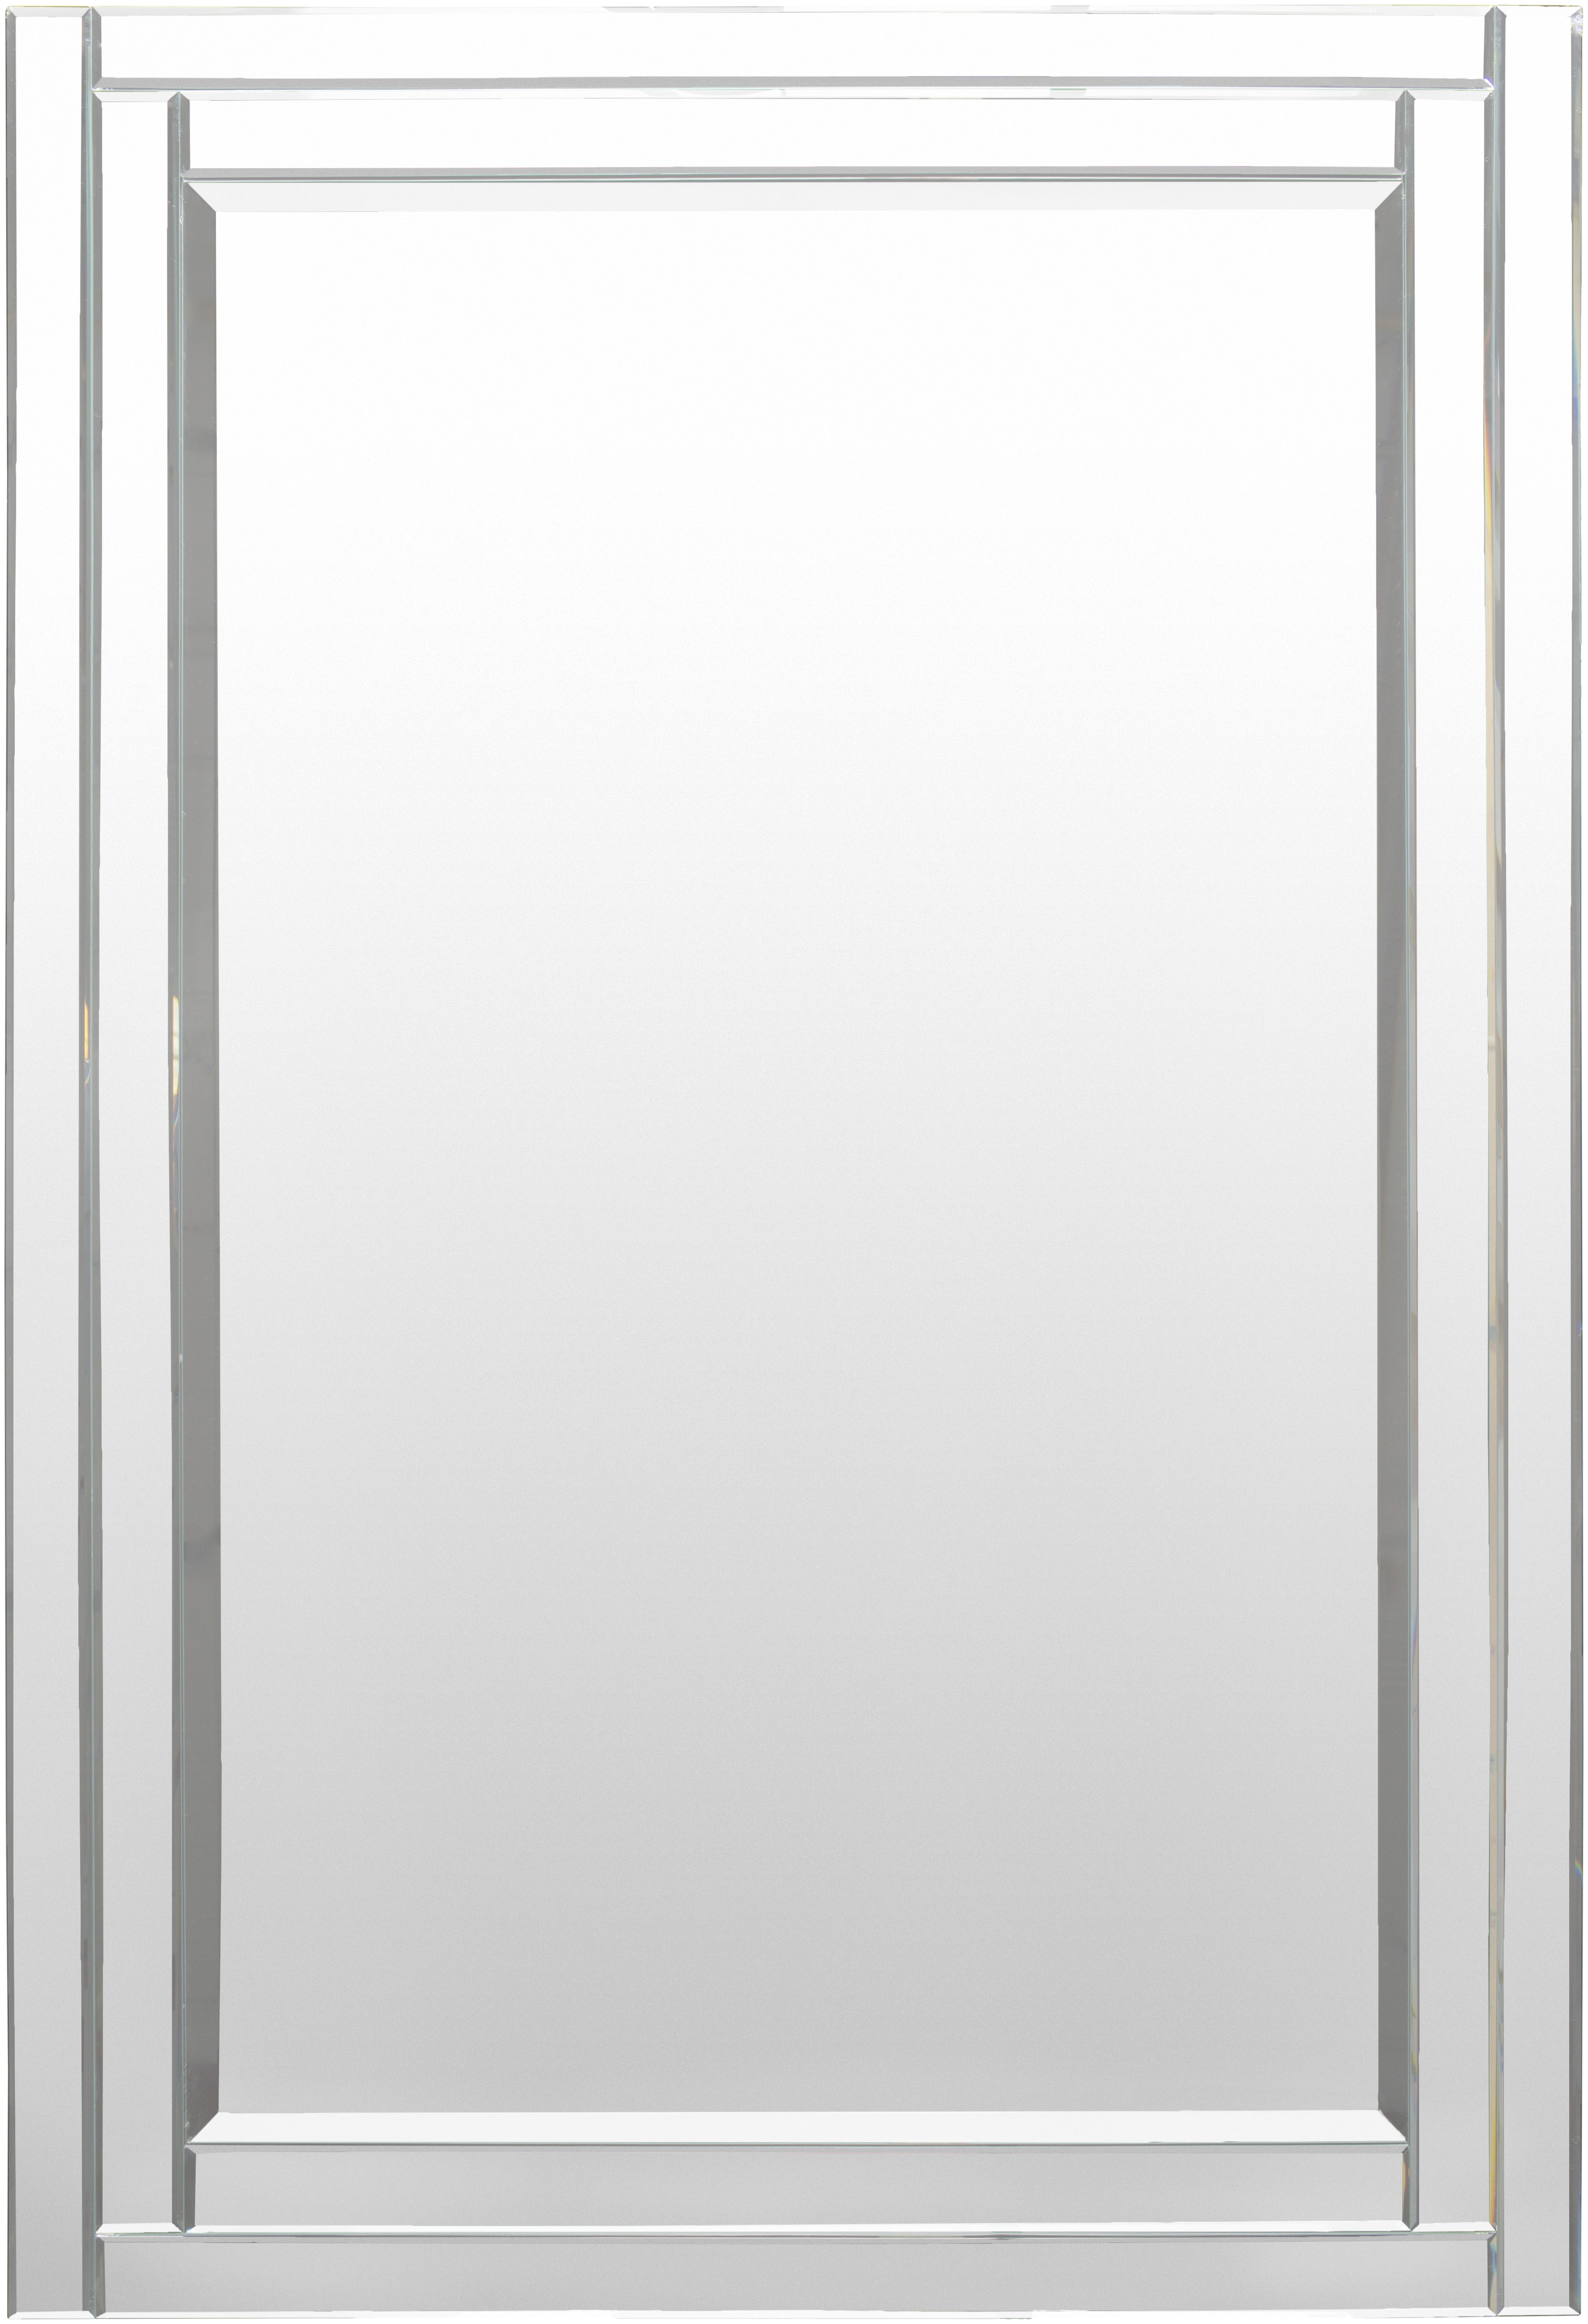 Bancroft Mirror, 53"H x 35"W x 1"D - Image 0